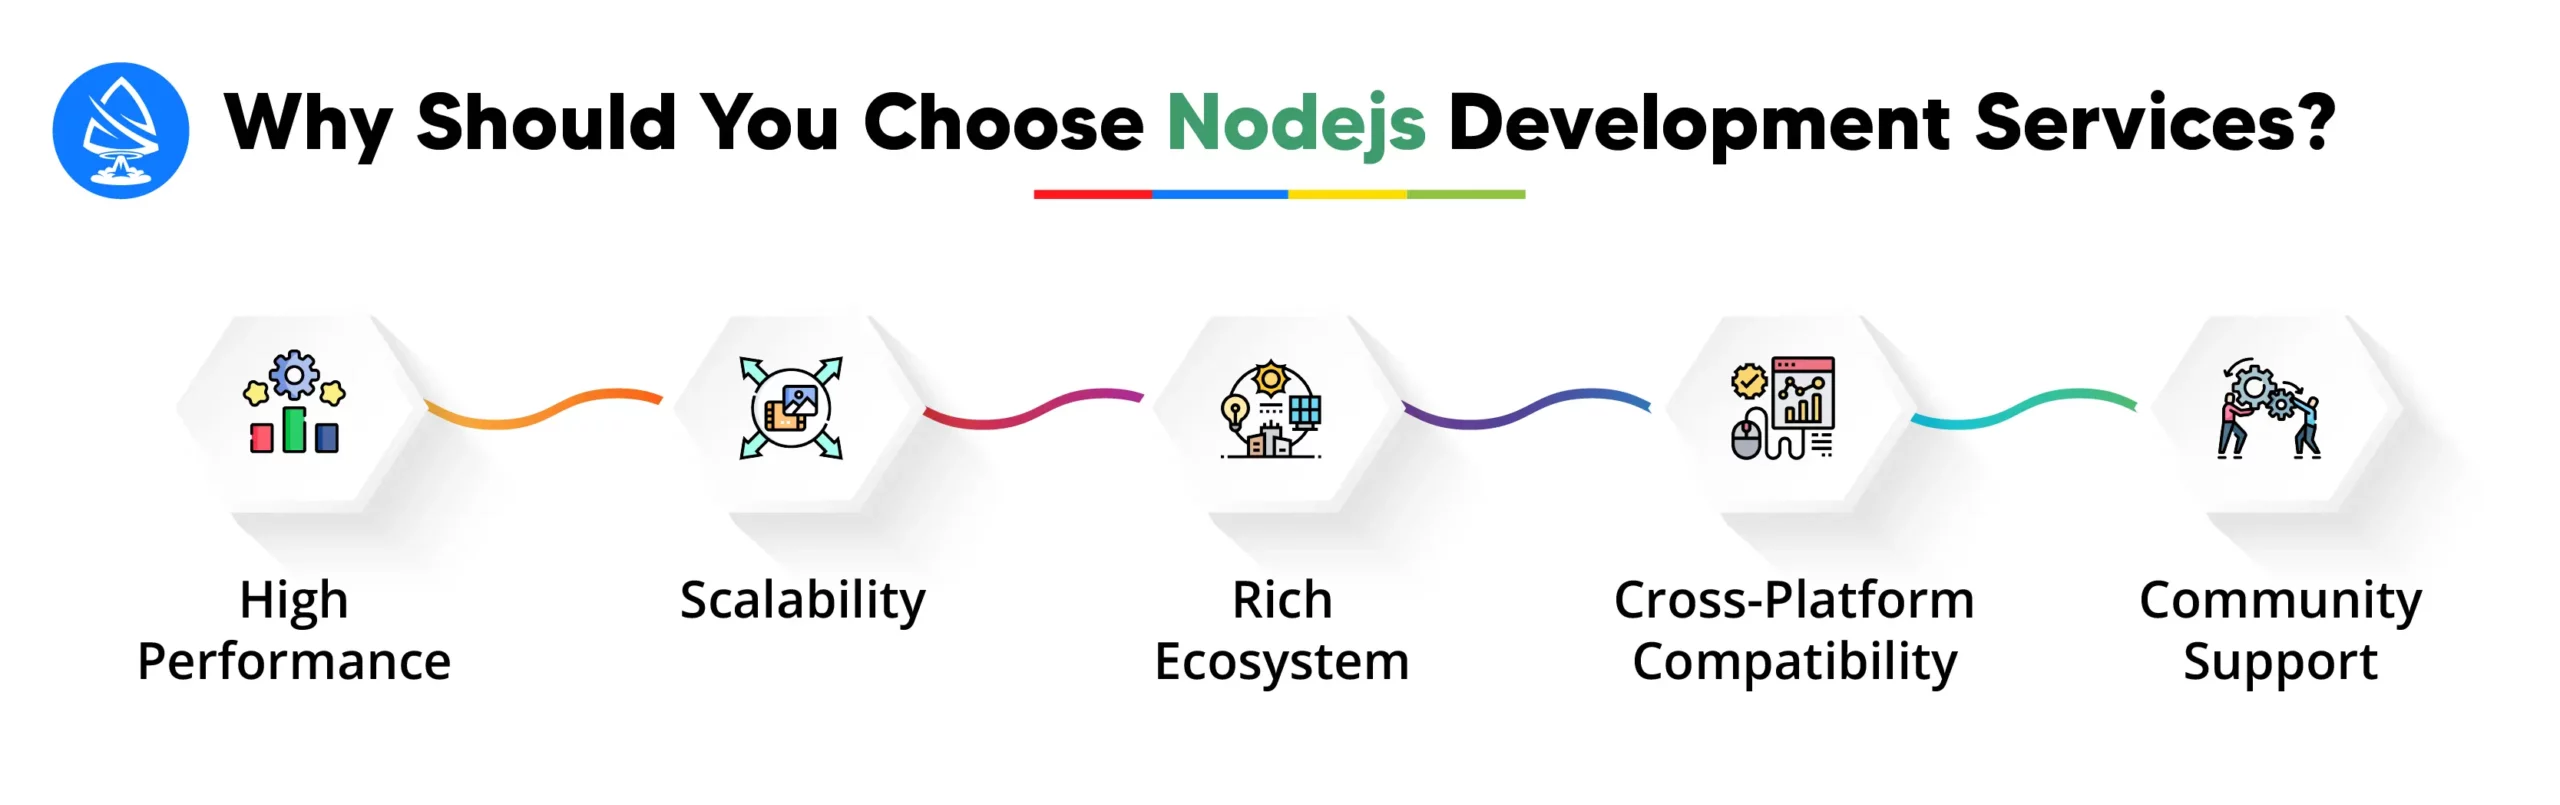 Why should you choose Nodejs Development Services? 